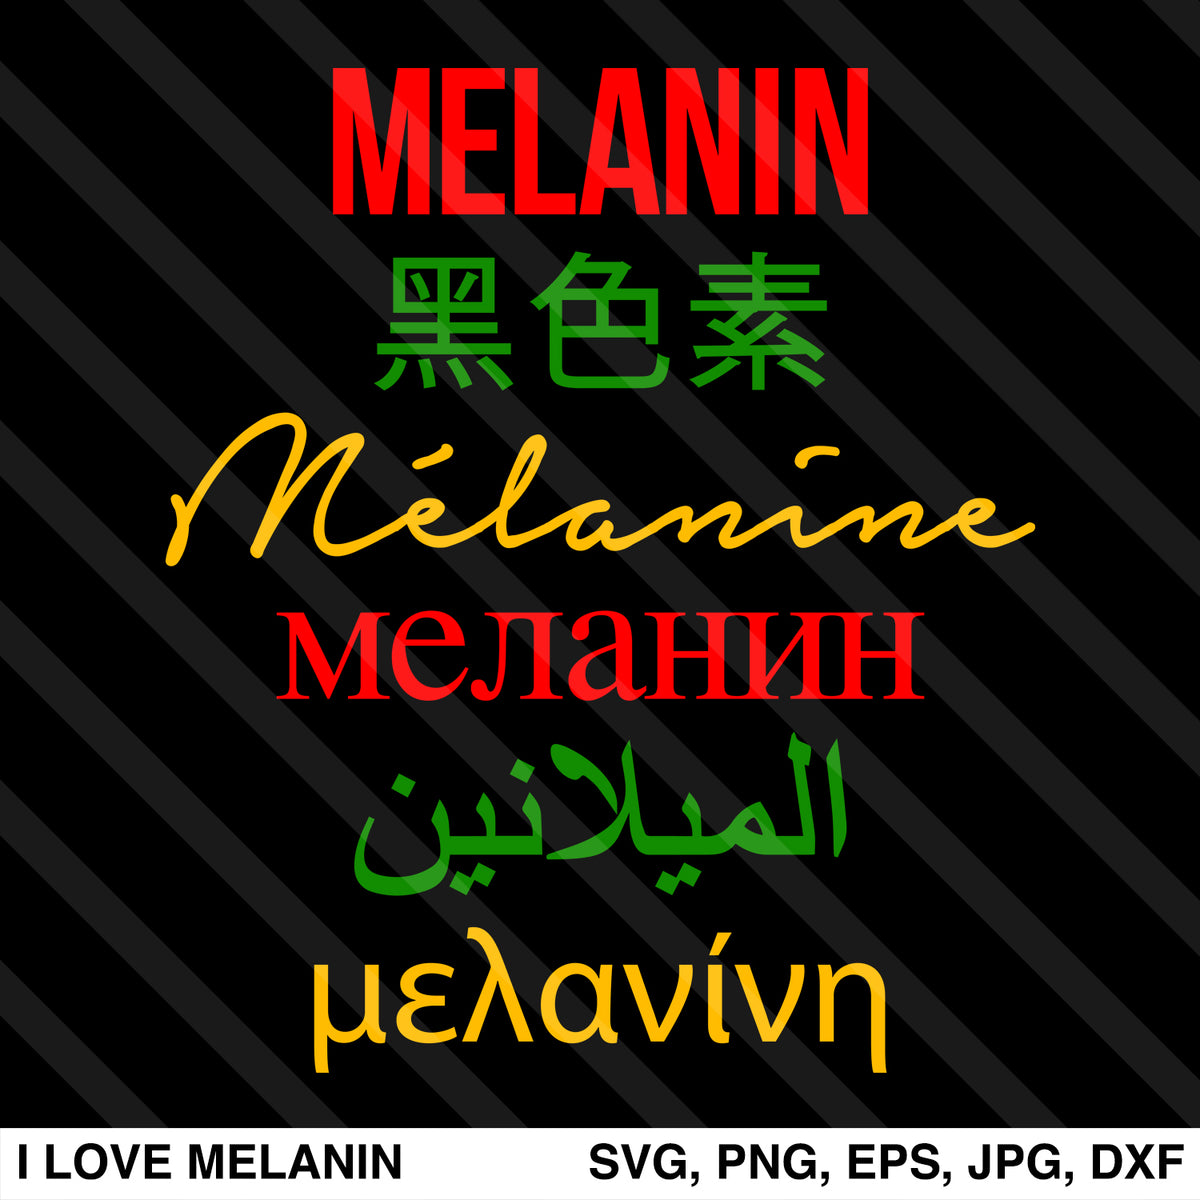 Download Melanin Multilingual SVG - I Love Melanin